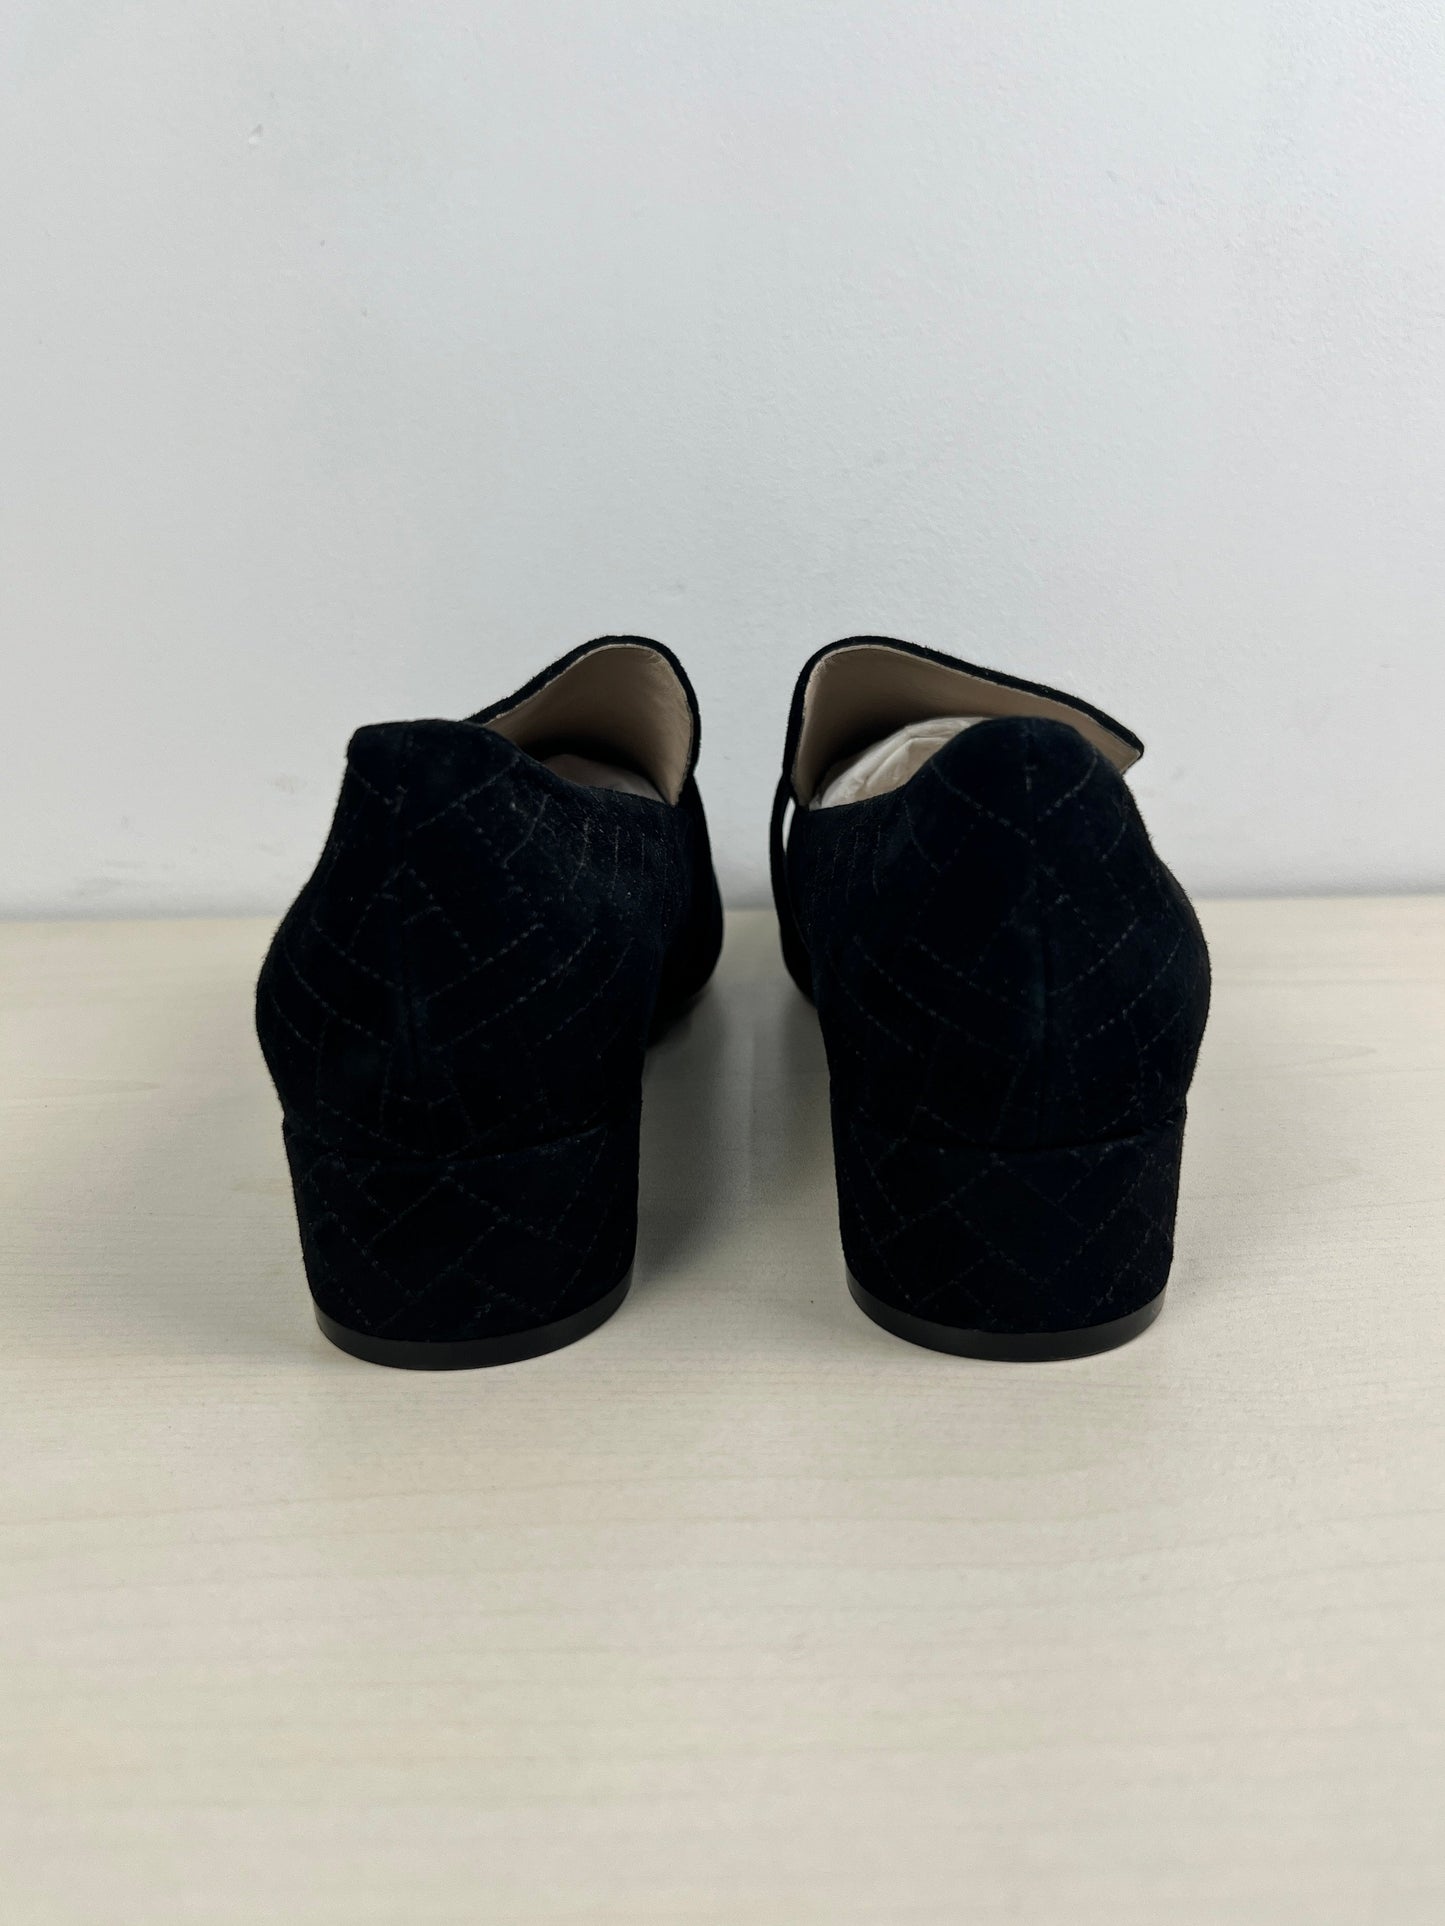 Black Shoes Heels Block Cole-haan, Size 9